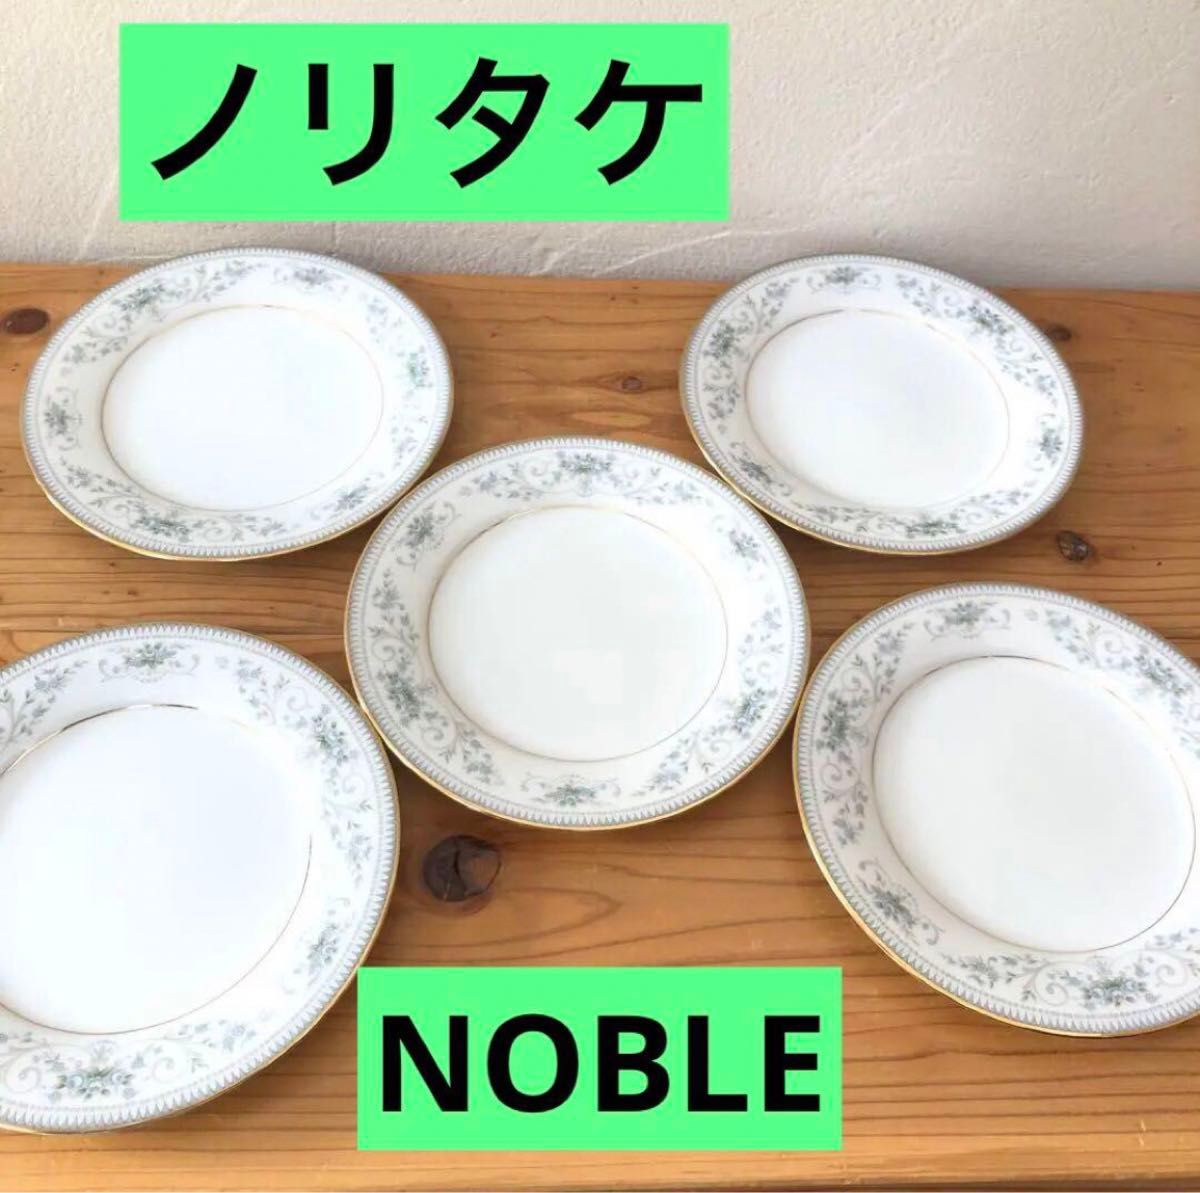 ノリタケ 2600 NOBLE プレート5枚セット Noritake 金彩